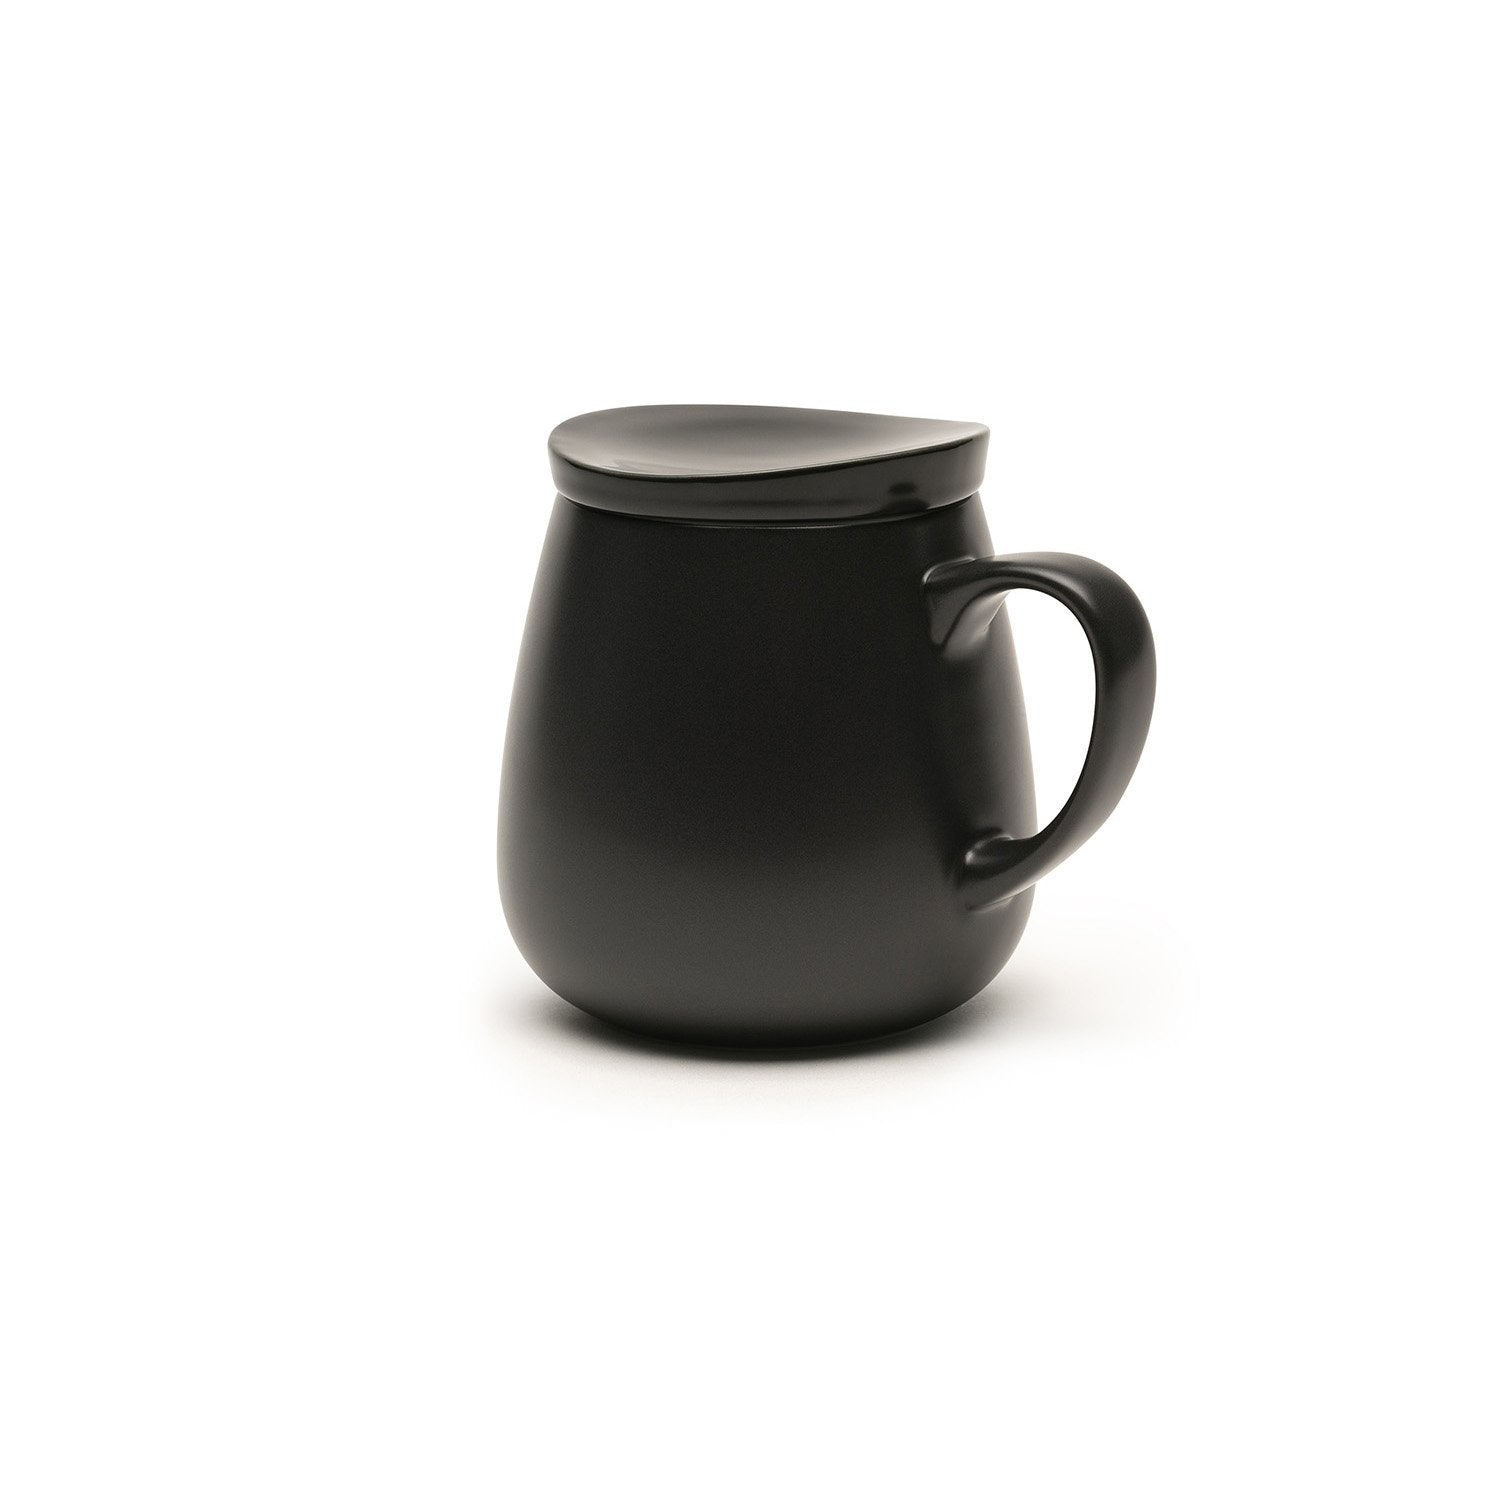 Large black mug